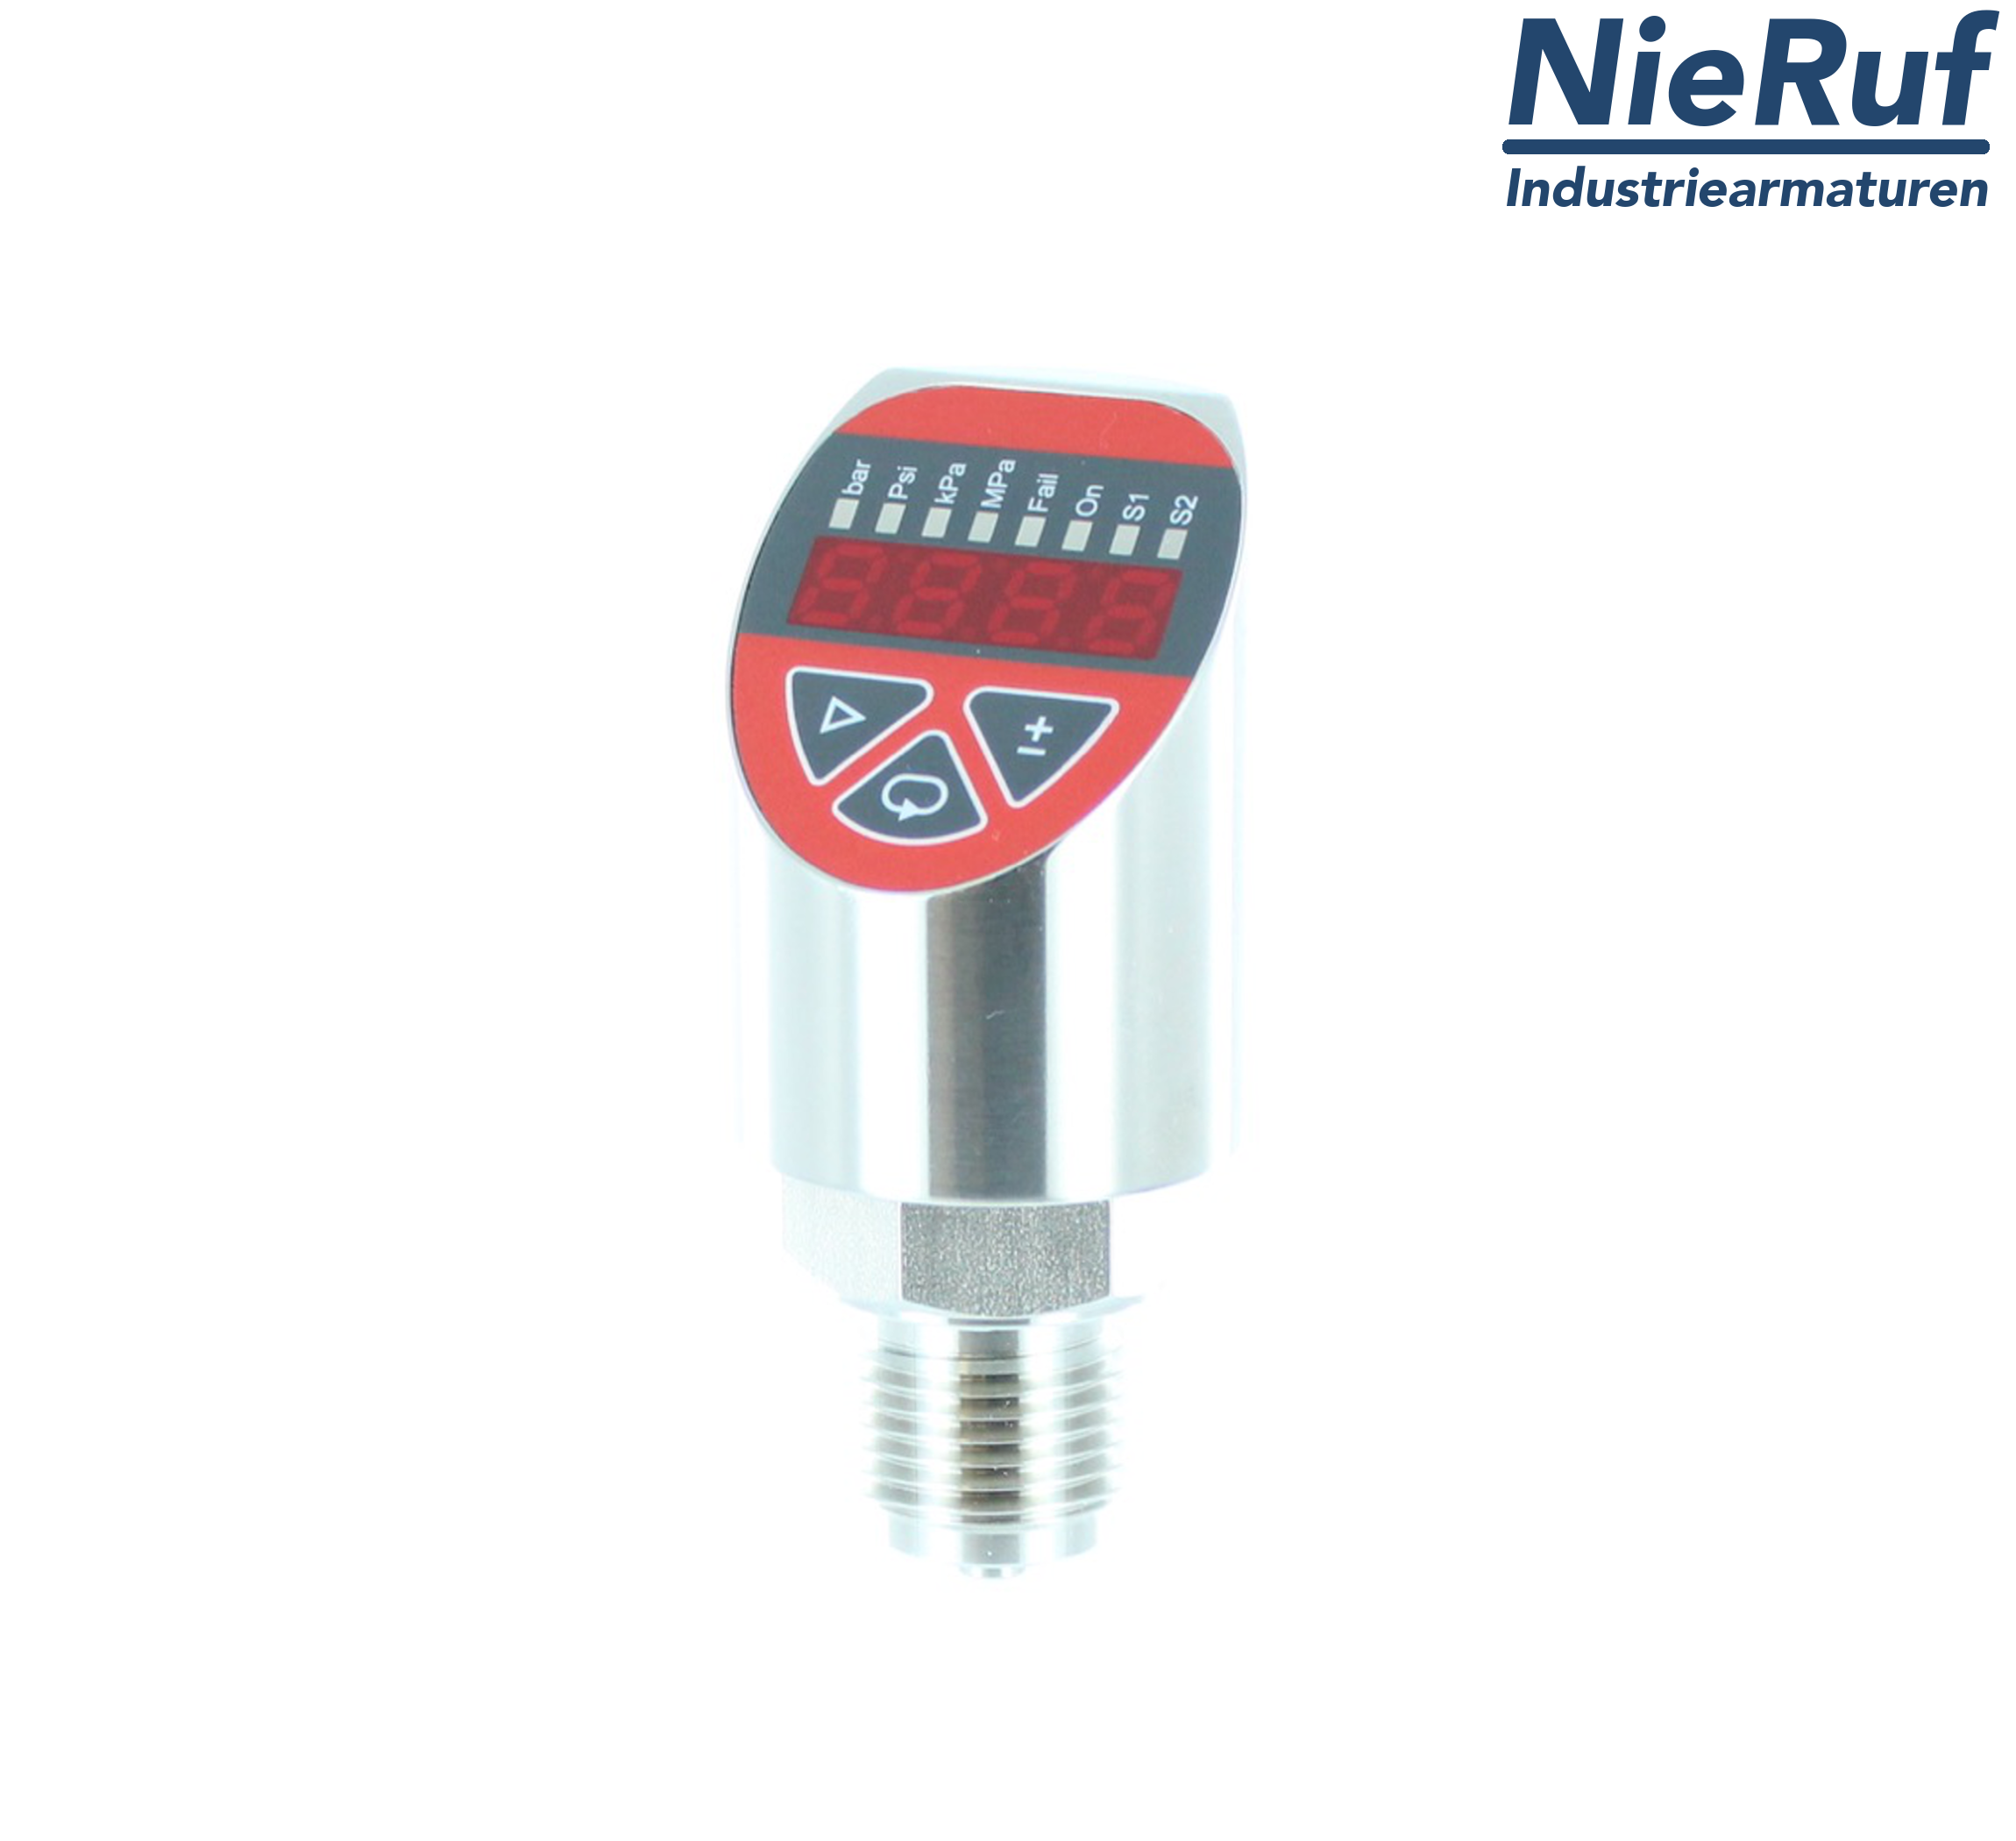 digital pressure sensor G 1/2" B IB 4-wire: 1xPNP, 1x4 - 20mA, Desina FPM 0,0 - 320,0 bar